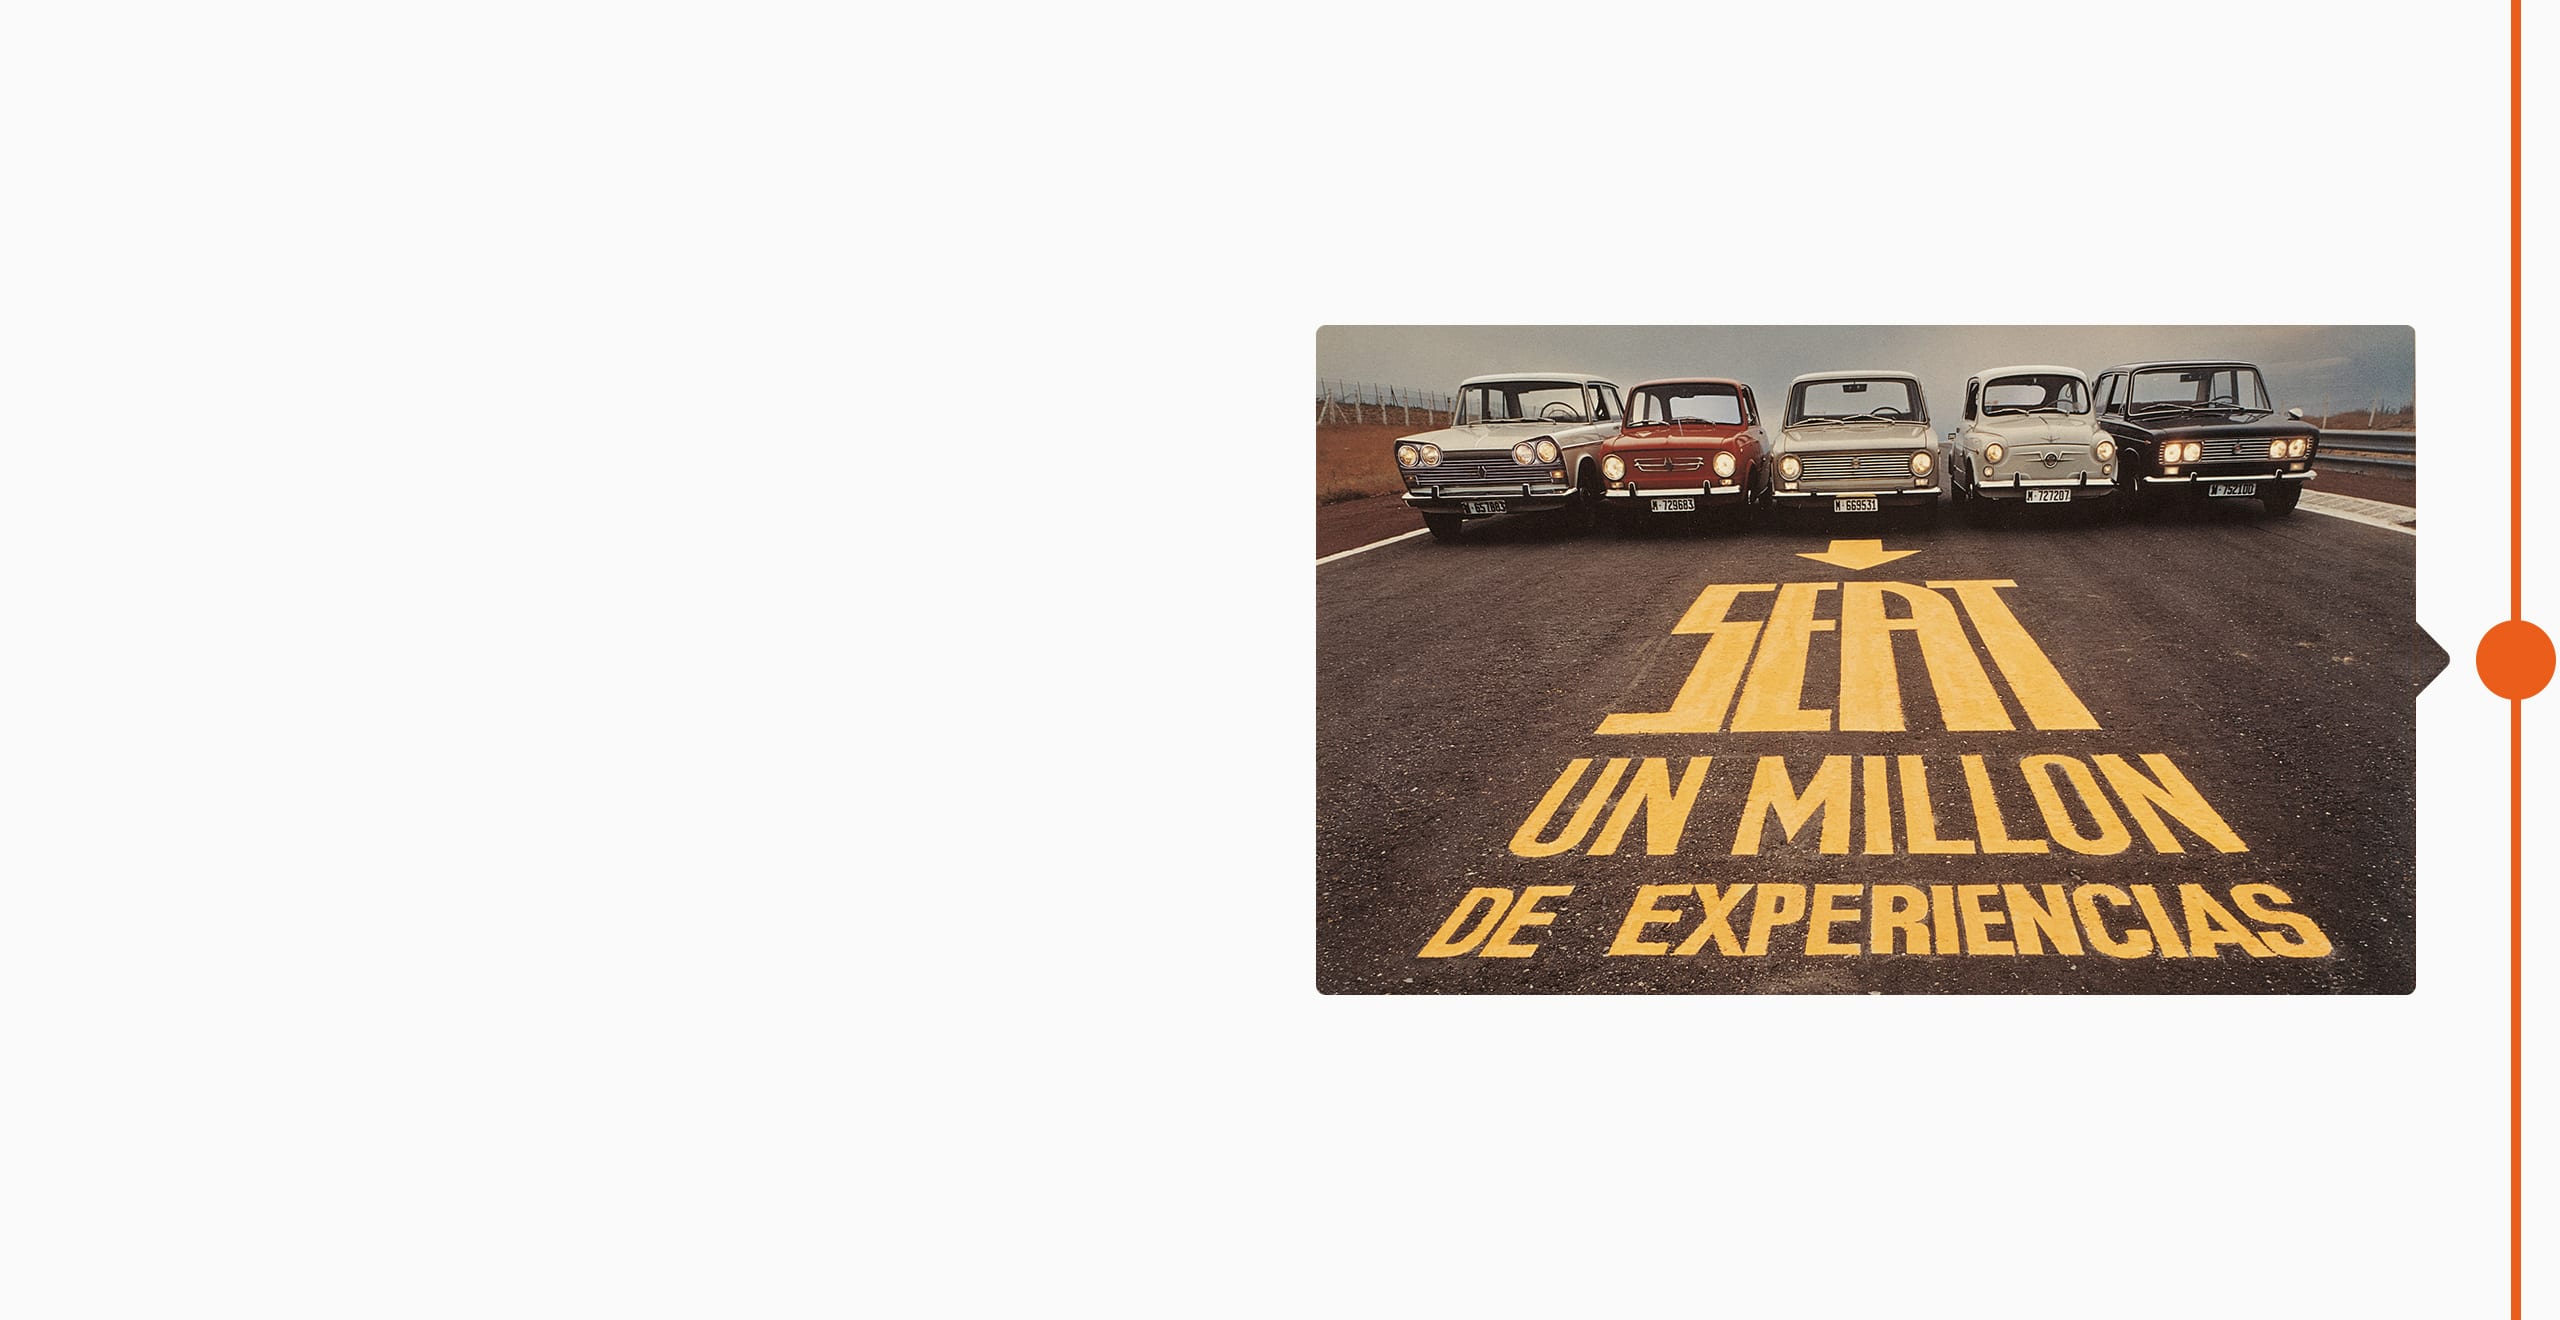 Varios modelos de SEAT de 1974 en la carretera con el mensaje: SEAT, un millón de experiencias